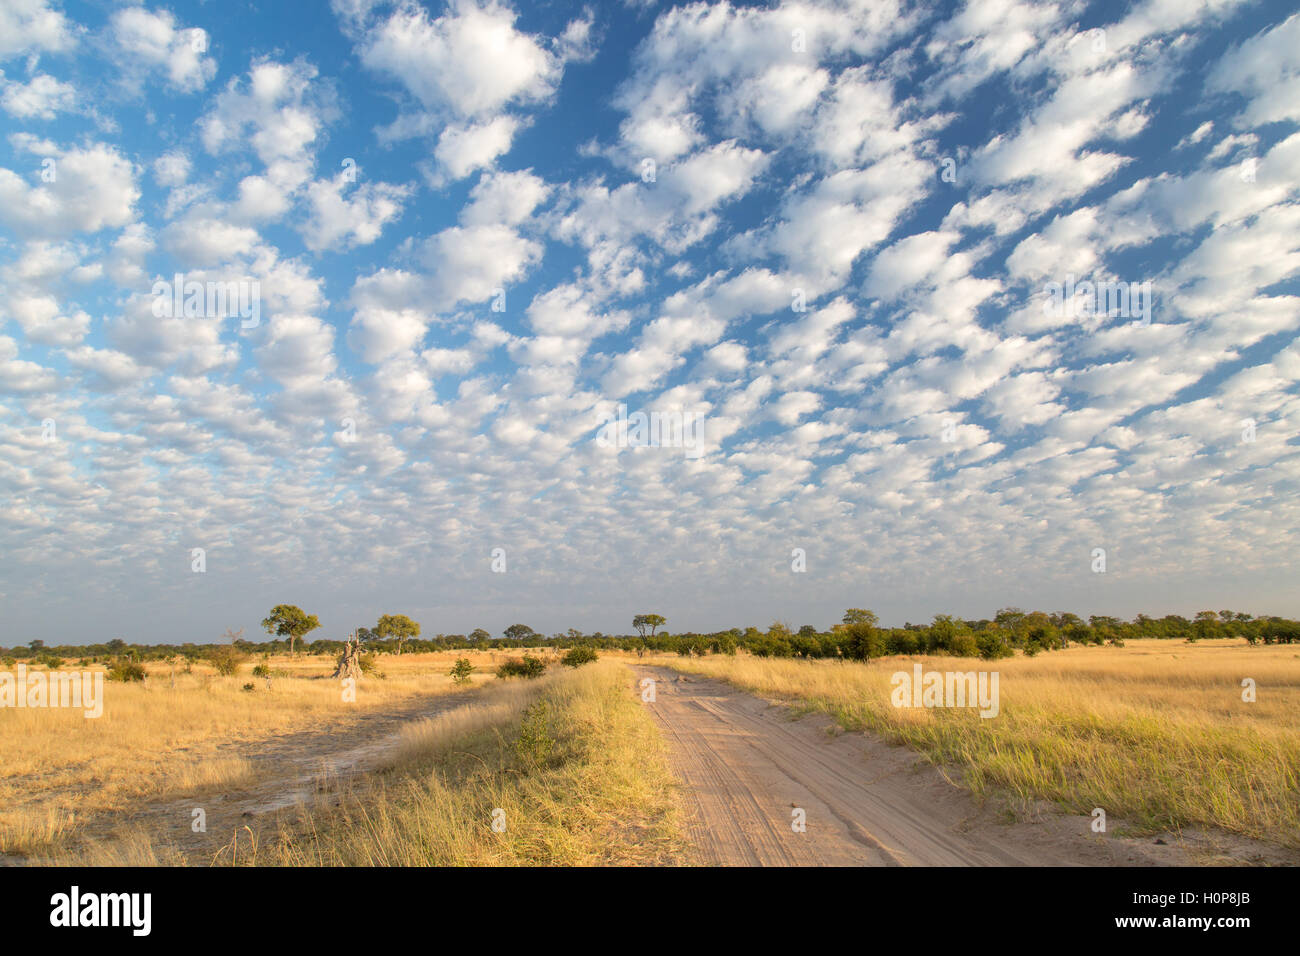 Un chemin de terre passant dans un paysage de savane avec nuages épars sur une prairie parsemée de bush jaune Banque D'Images